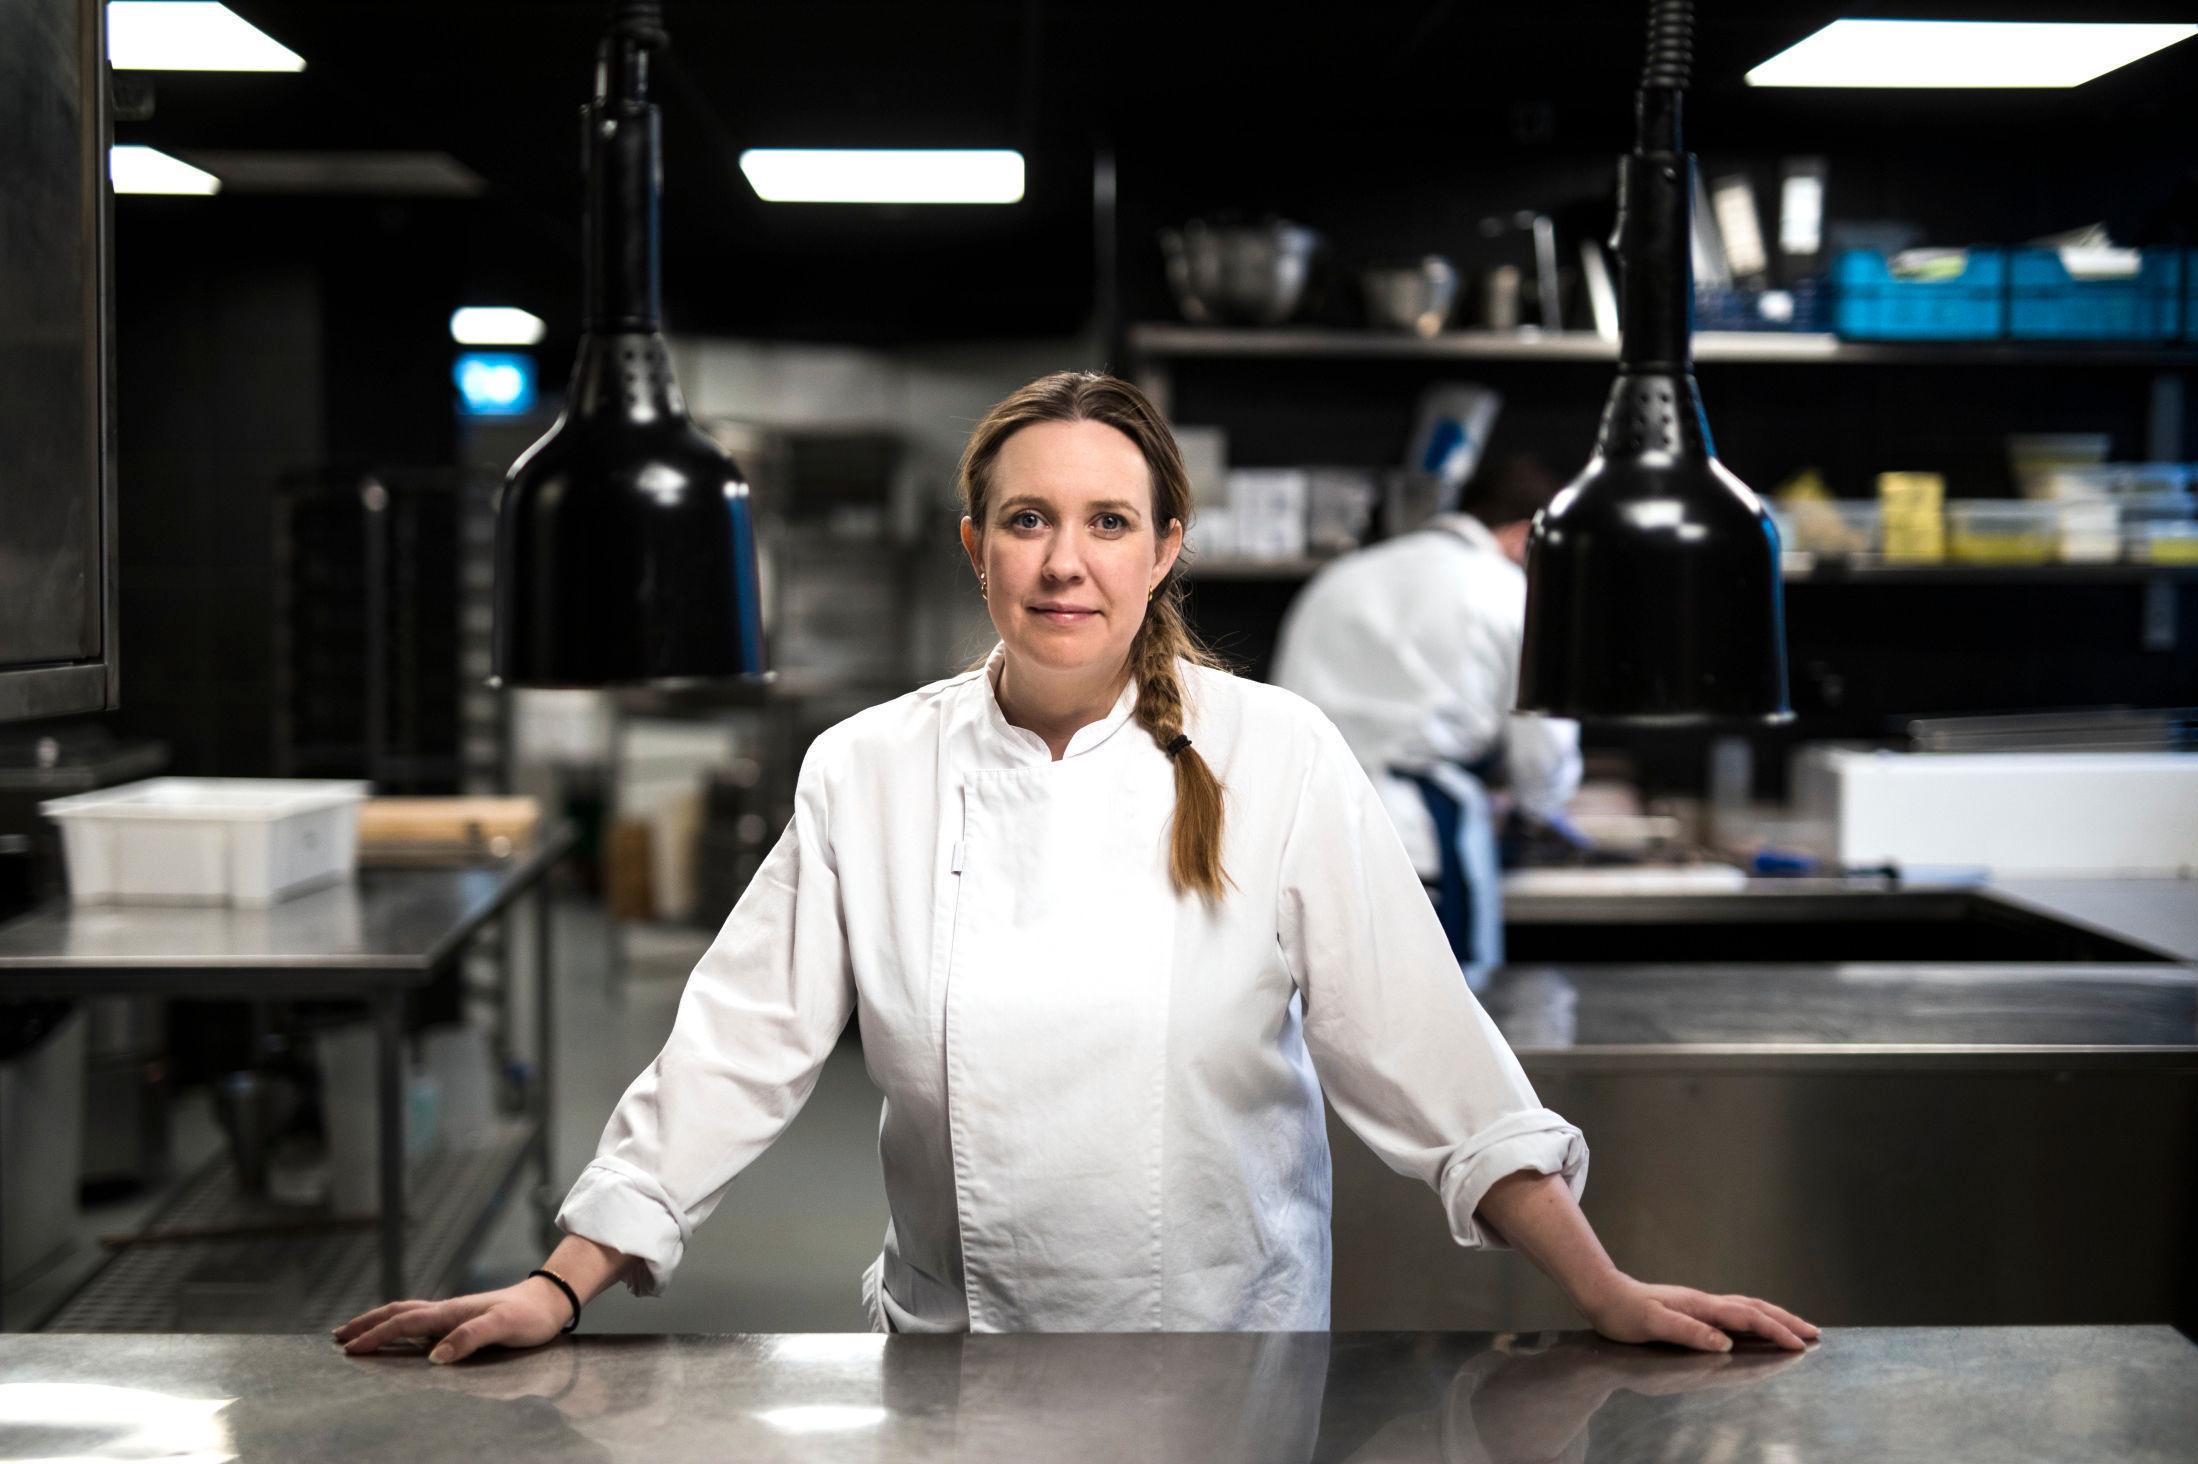 POSITIV: Kari Innerå driver i dag restaurant BA53 i Oslo. Hun har tidligere vært med i en rekke konkurranser. Foto: Thomas Andreassen/VG